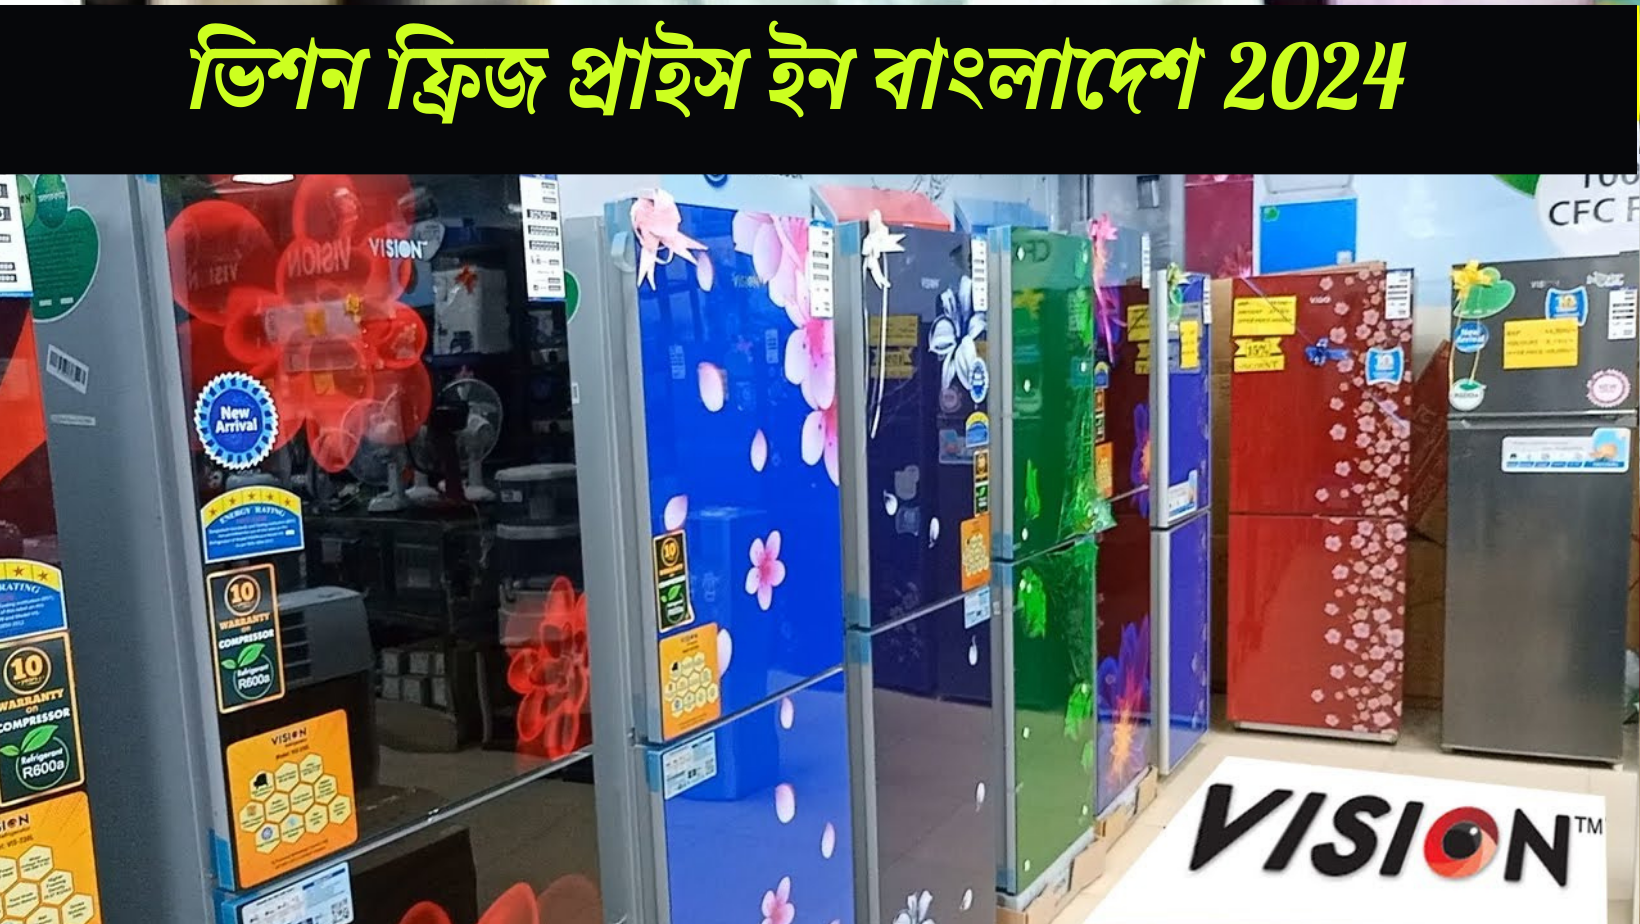 ভিশন ফ্রিজ প্রাইস ইন বাংলাদেশ 2024, ভিশন কোম্পানির সকল রেফ্রিজারেটরের মূল্য তালিকা এবং কোন ফ্রিজ আপনার জন্য উপযোগী, Vision Fridge Price in Bangladesh 2024, biborun.com